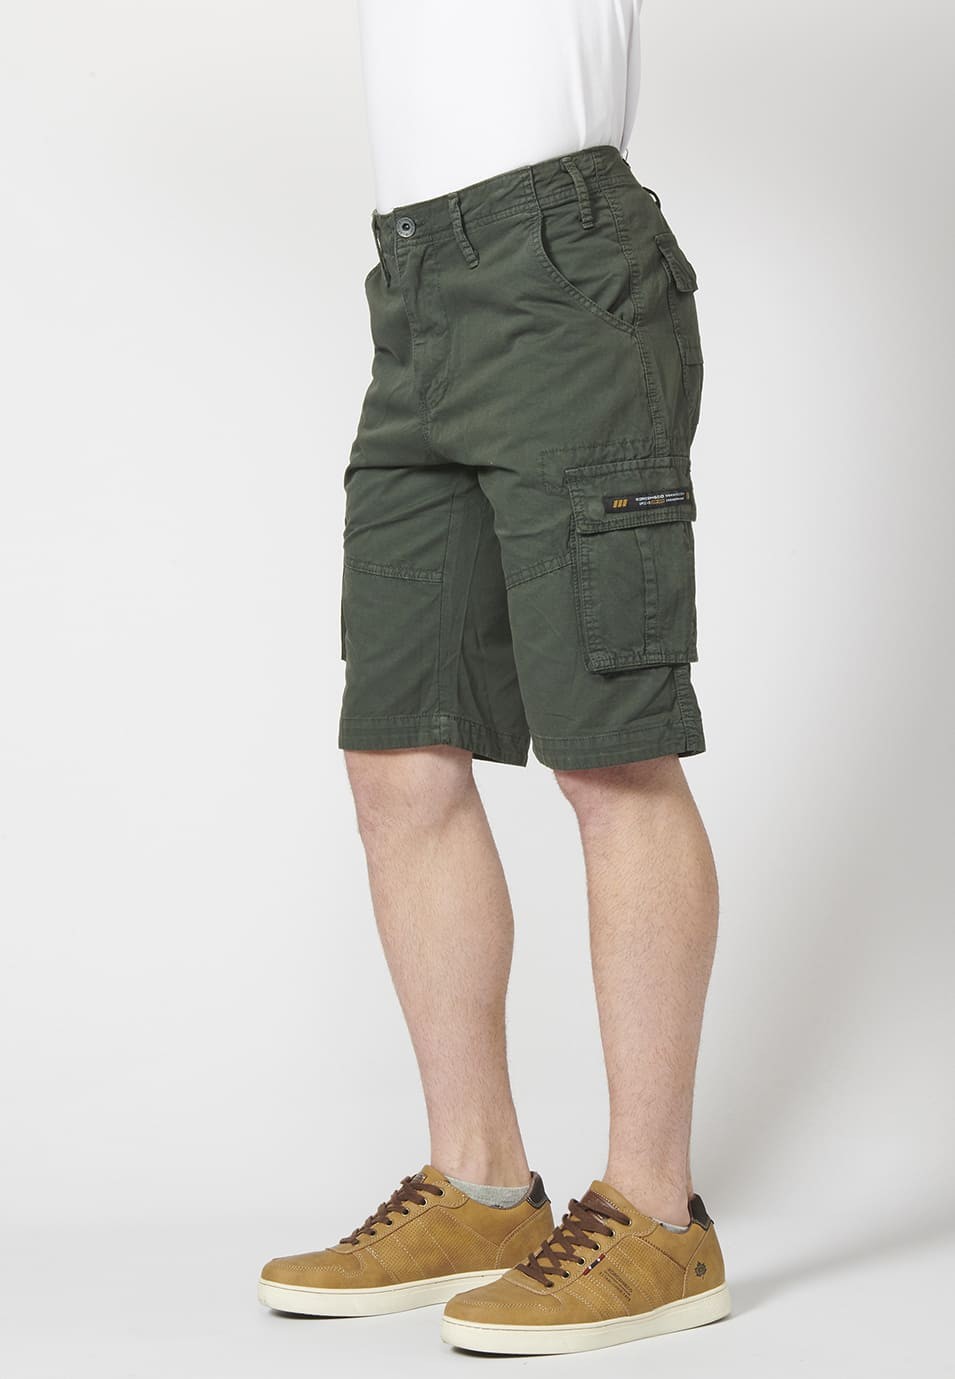 Bermuda pantalón corto estilo cargo para hombre con seis bolsillos